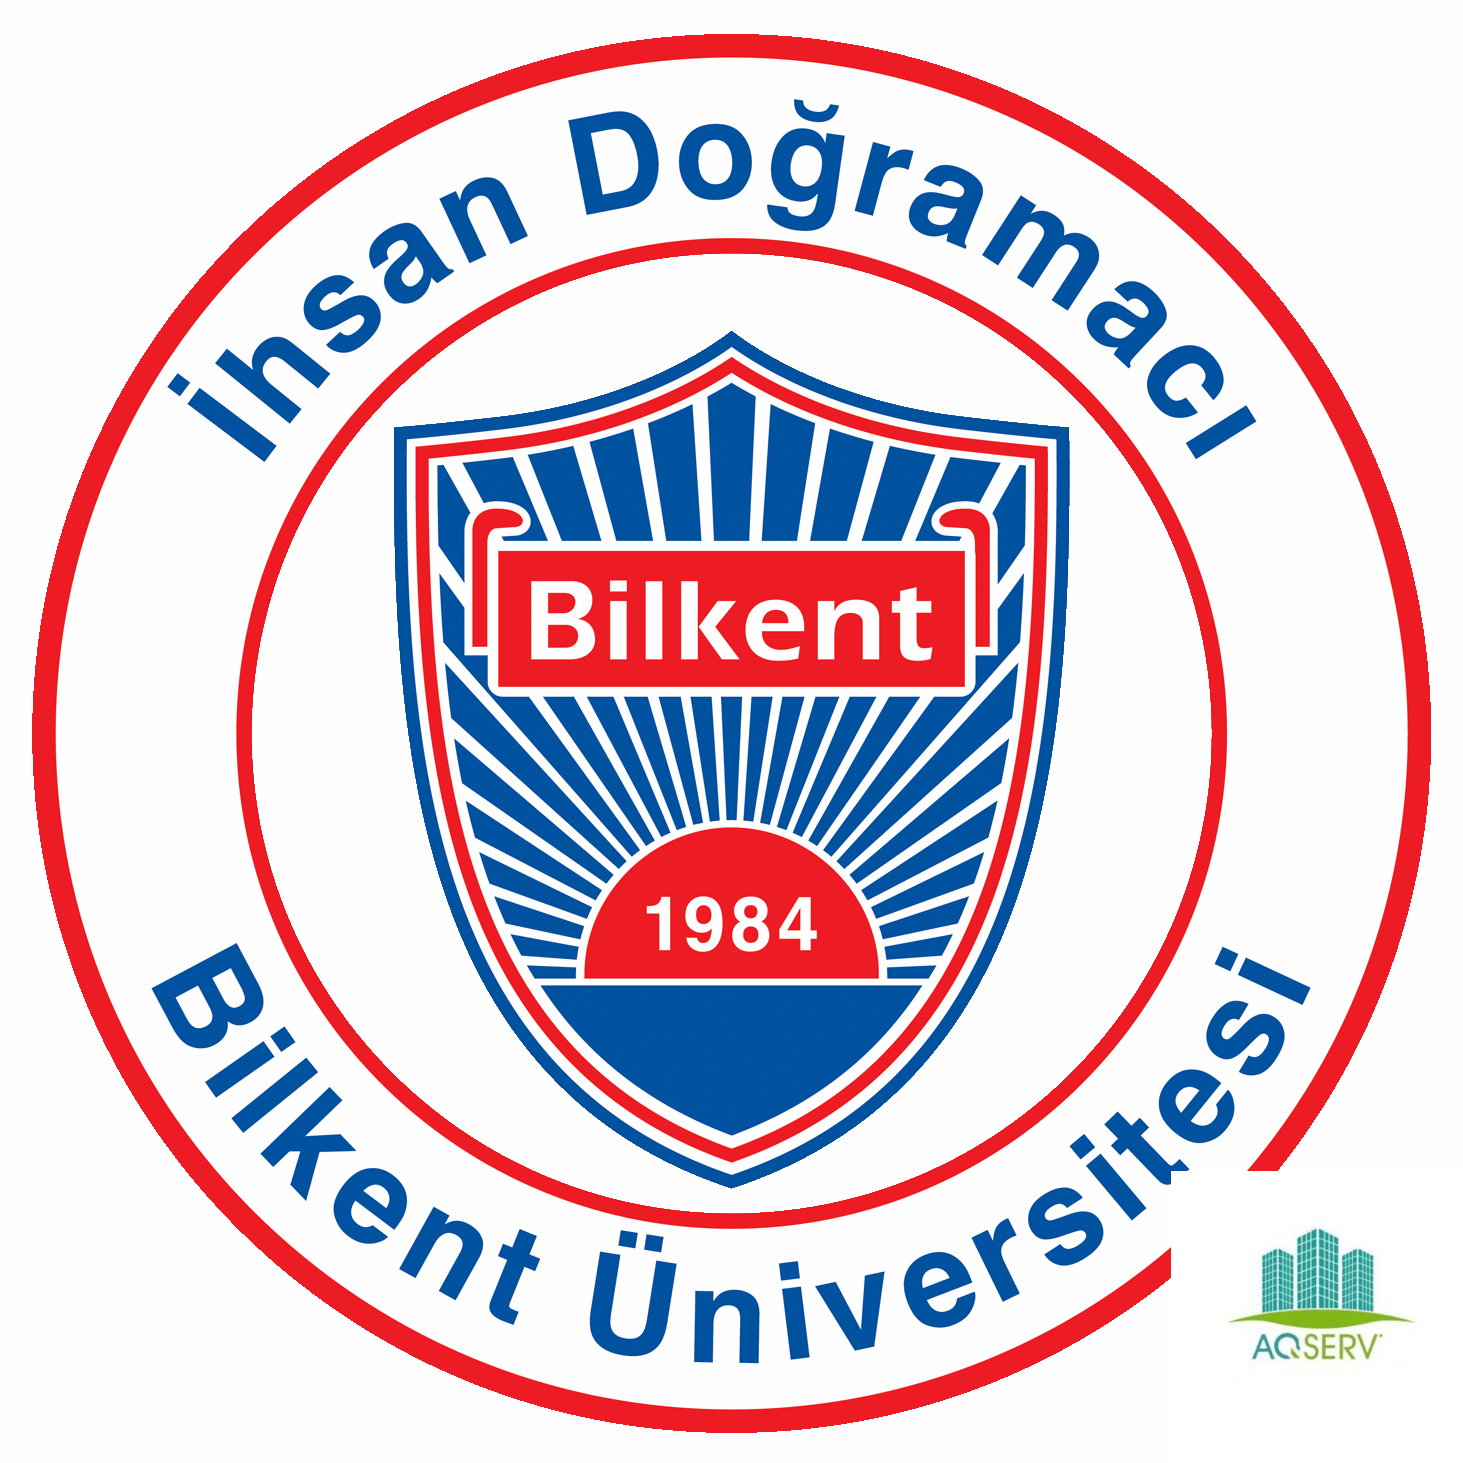 جامعة بيلكنت Bilkent University